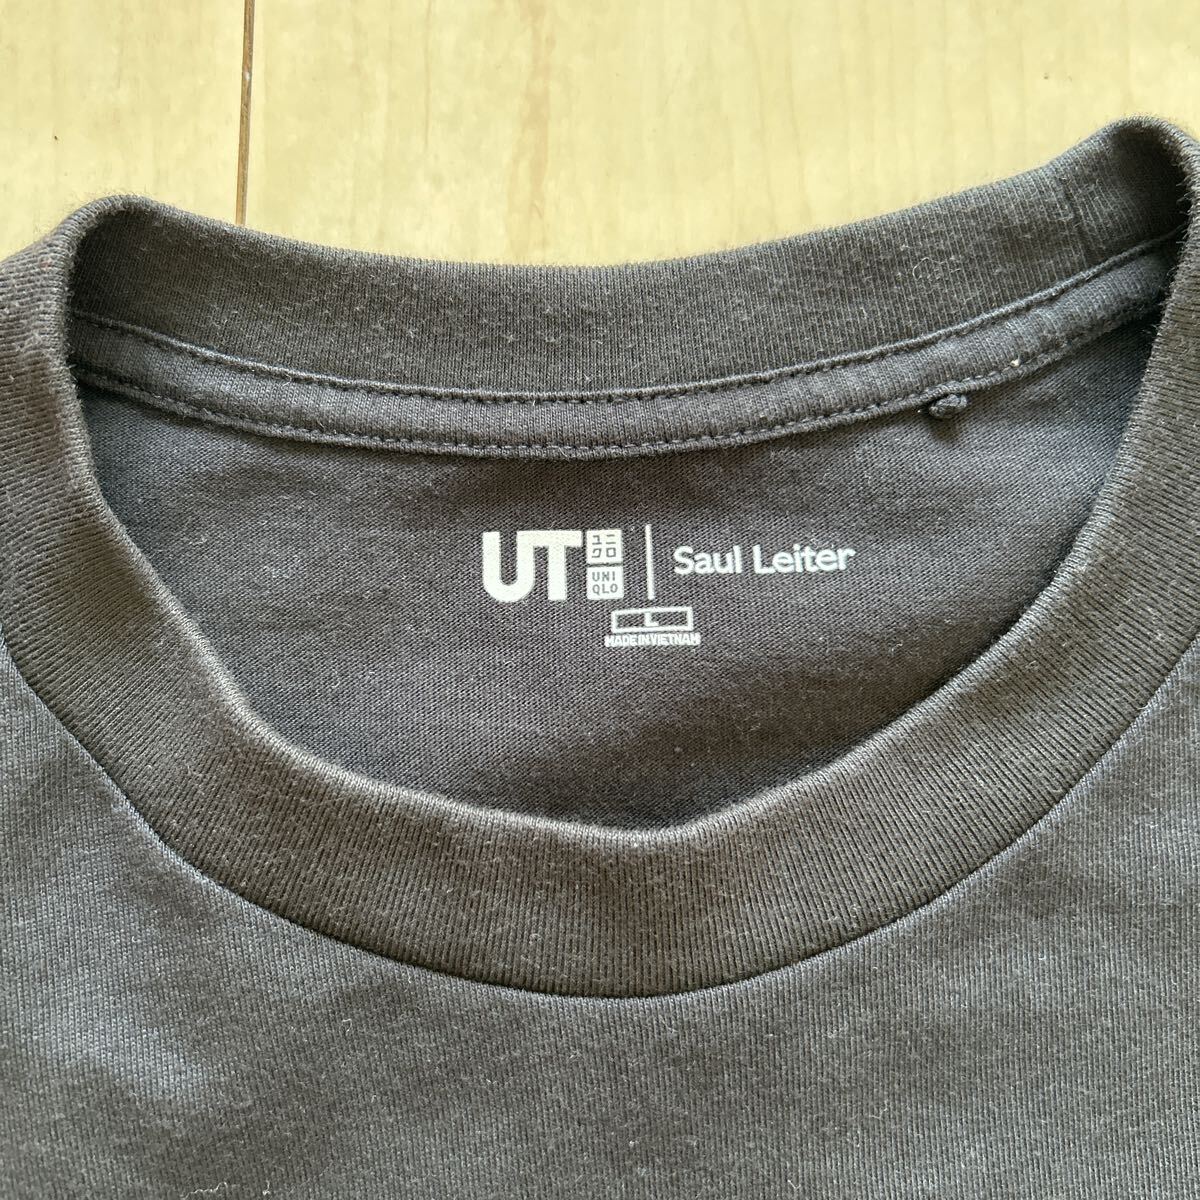 L ソール・ライター 半袖Tシャツ 黒 UT UNIQLO ユニクロ コラボ グラフィックT ブラック Saul Leiter 写真家 板のあいだ ポチり隊 隊長